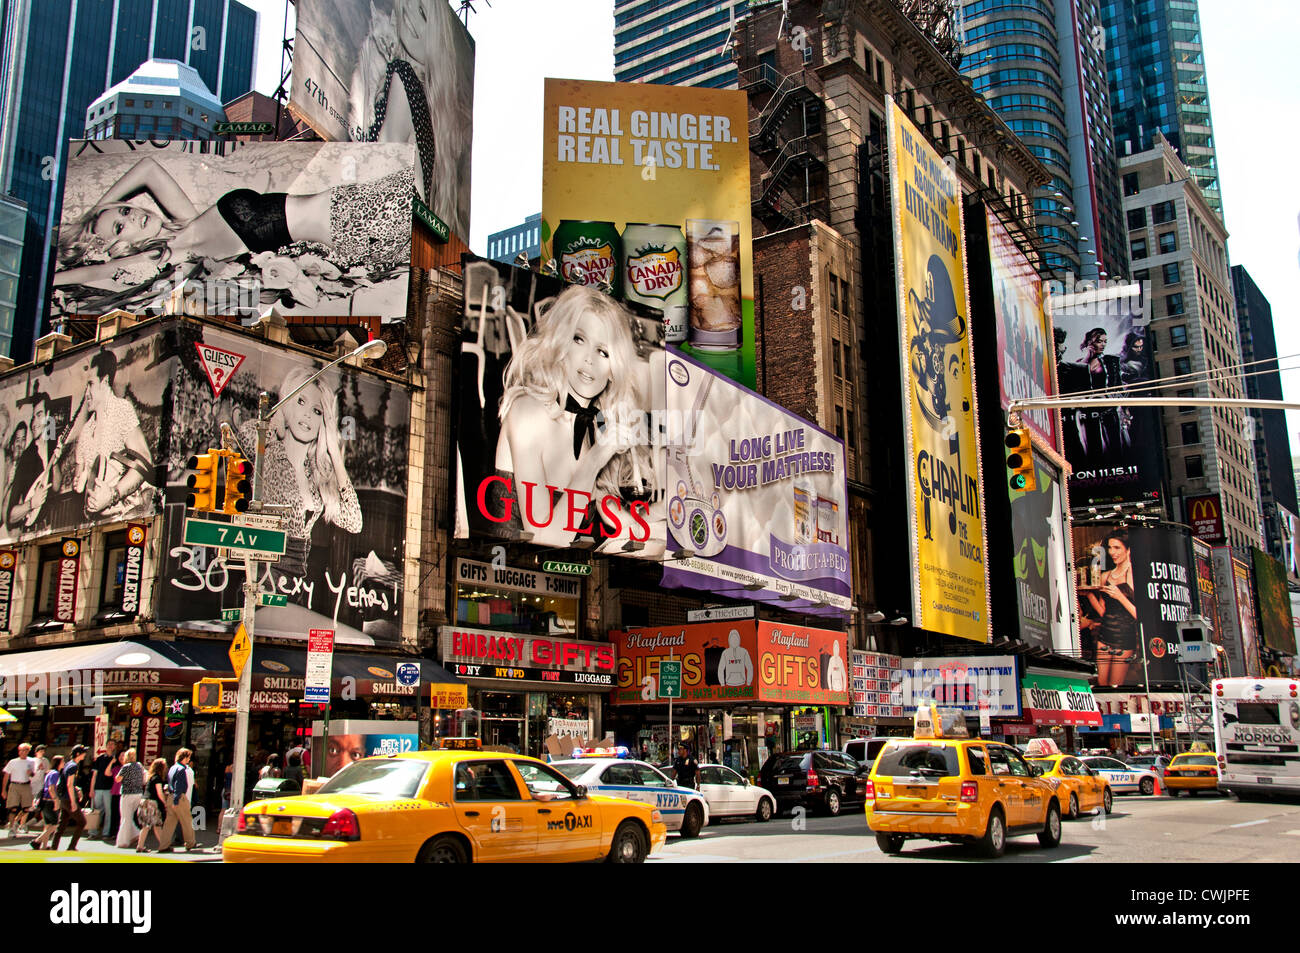 Times Square Broadway New York City Theatre Music, Times Square ist ein Unterhaltungs- und Geschäftsviertel in New York City, USA. Stockfoto